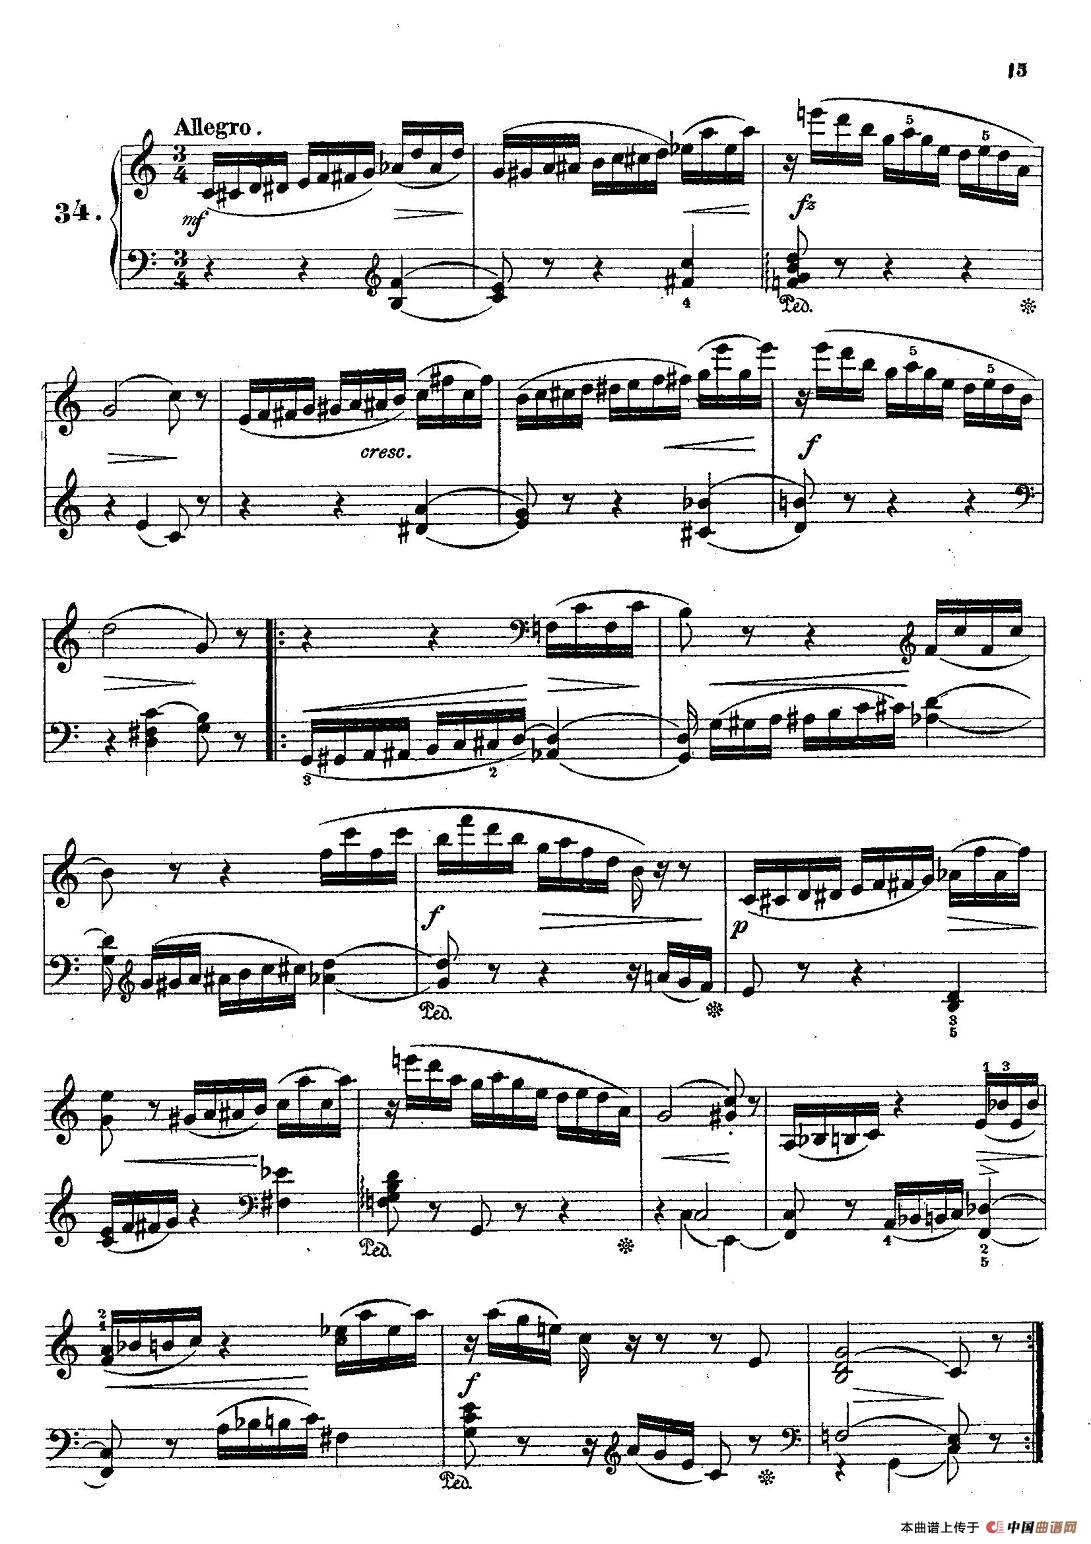 36 Etudes Rhythmiques et Melodiques Op.105（36首节奏与旋律